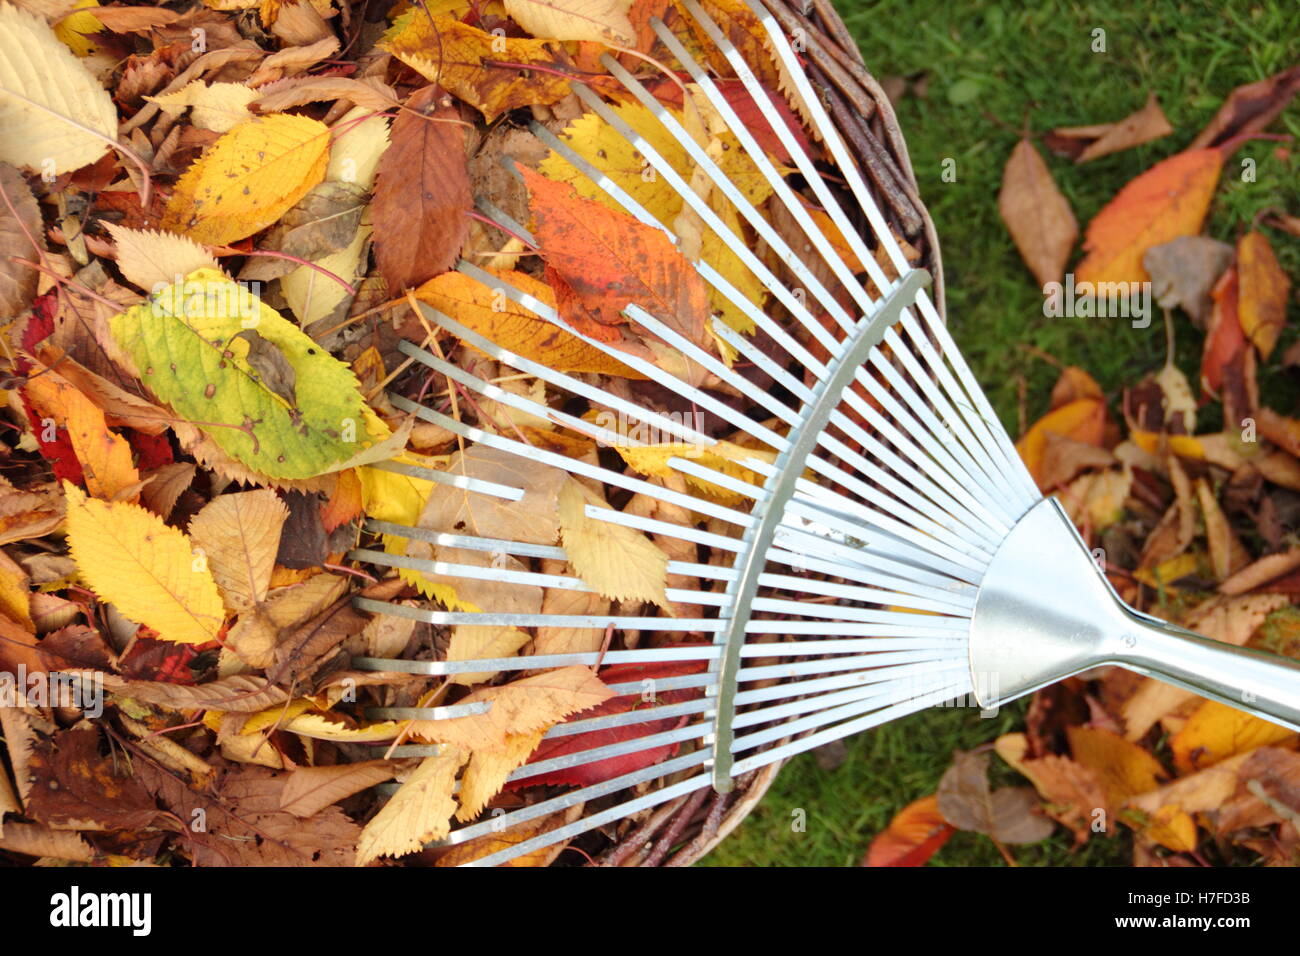 Sammeln Blätter im Herbst von einem Garten Rasen für die Kompostierung Blattform Mulch zu machen Stockfoto